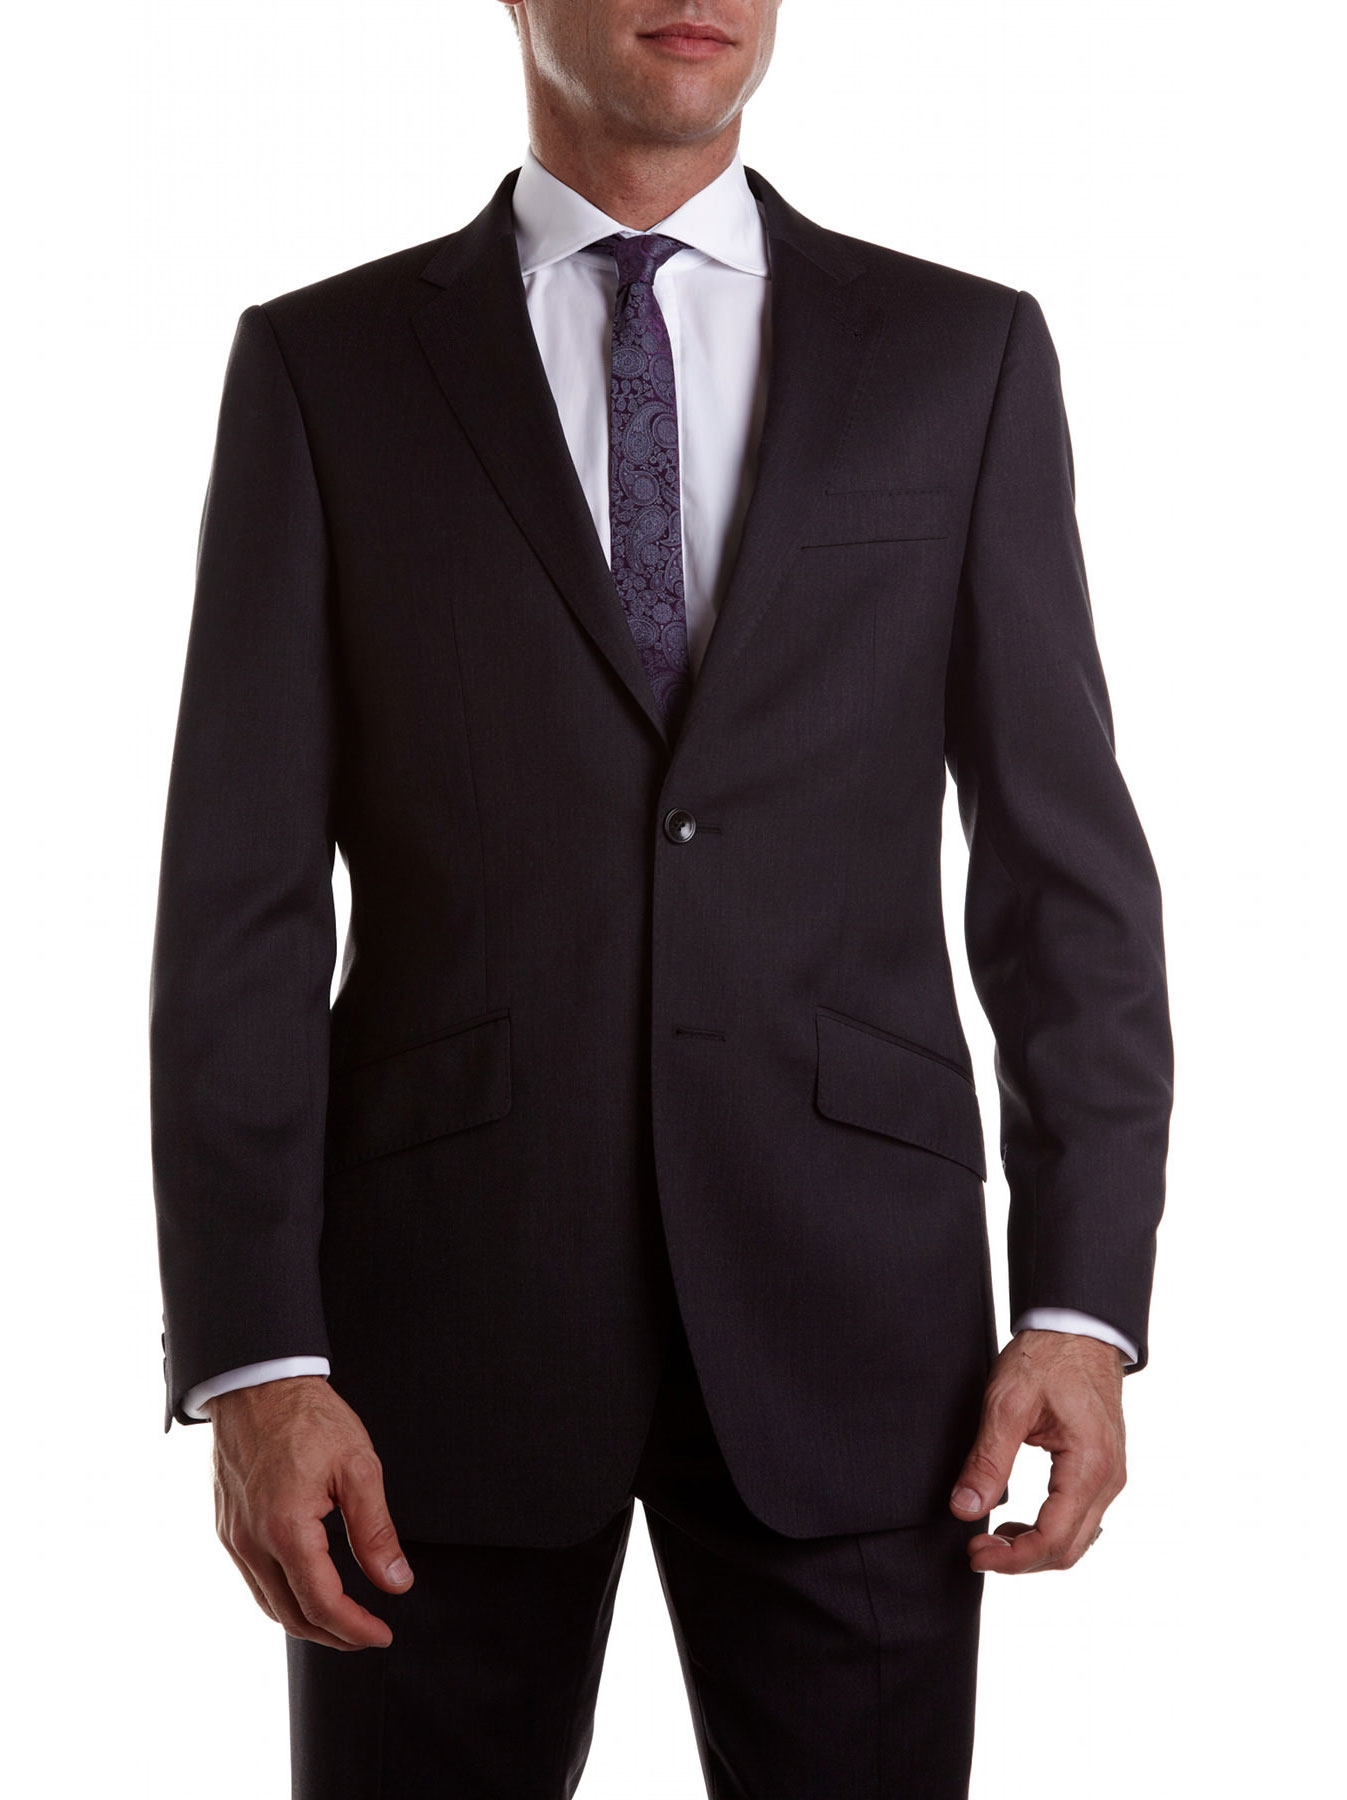 Business suit photo